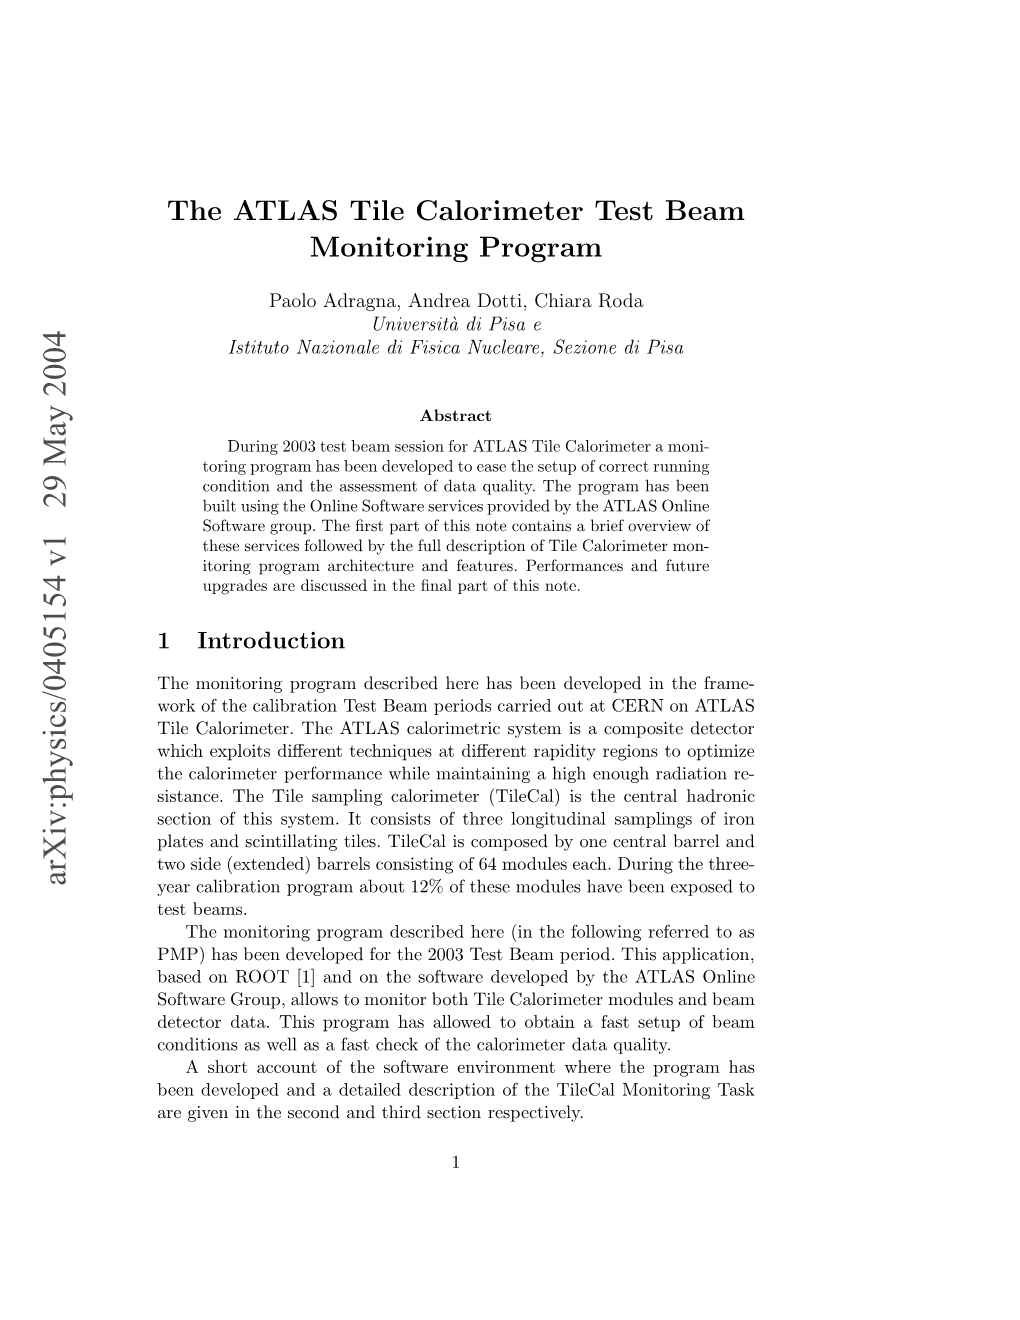 The ATLAS Tile Calorimeter Test Beam Monitoring Program